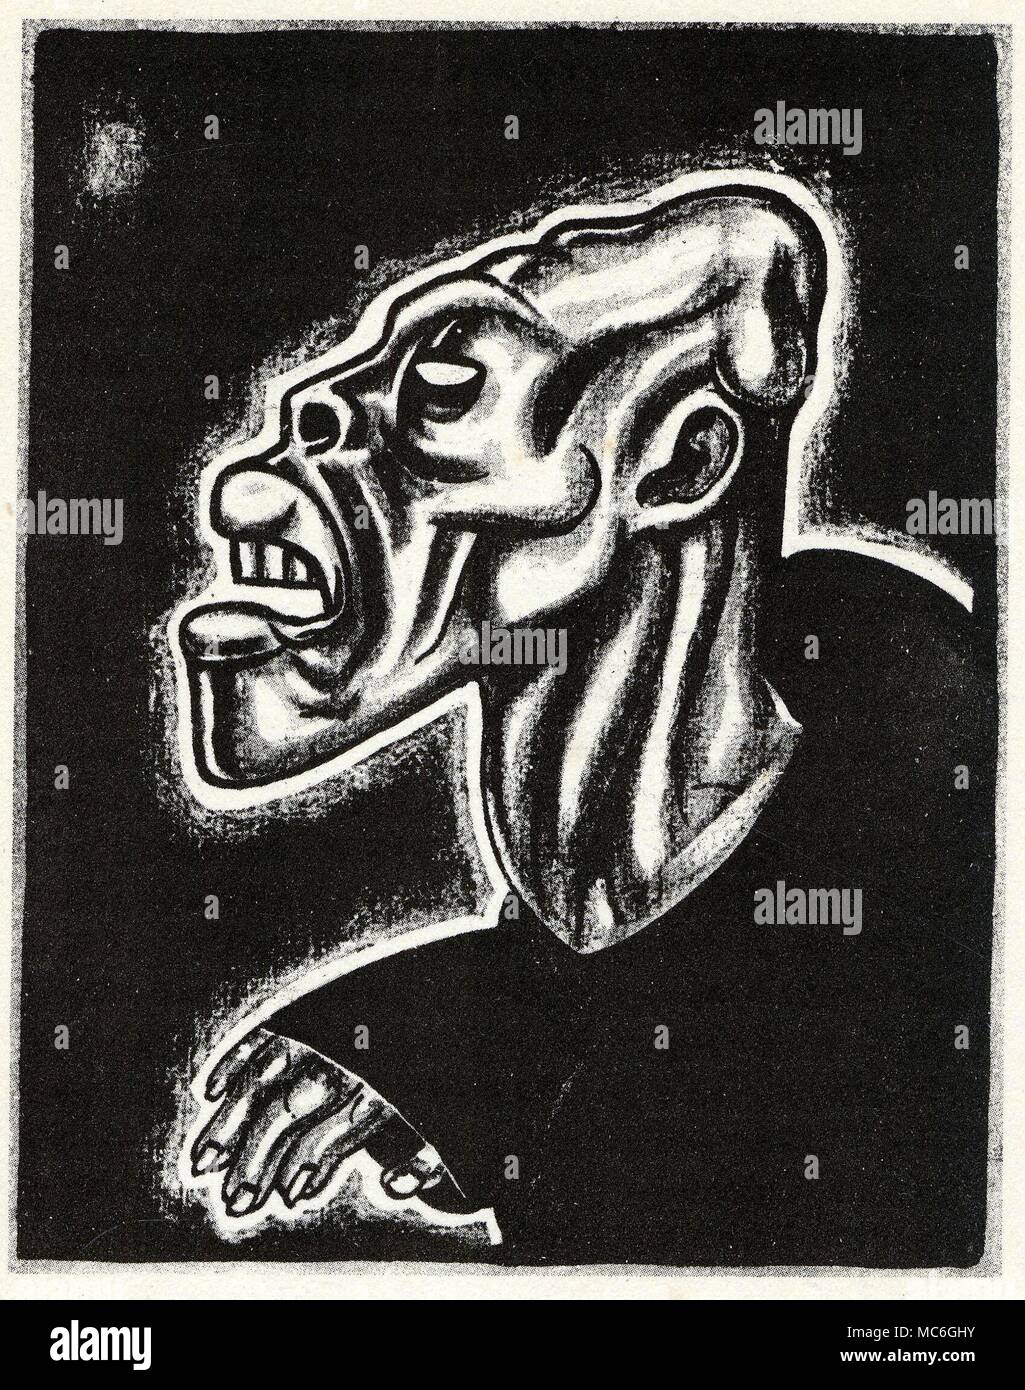 VOODOO-OUANGA ein Mann zum Tod durch den Voodoo Tod gekennzeichnet - Fluch ouanga, oder Zauber. Abbildung von A.König, bei W.B. Seabrook, die magische Insel, 1929. Stockfoto